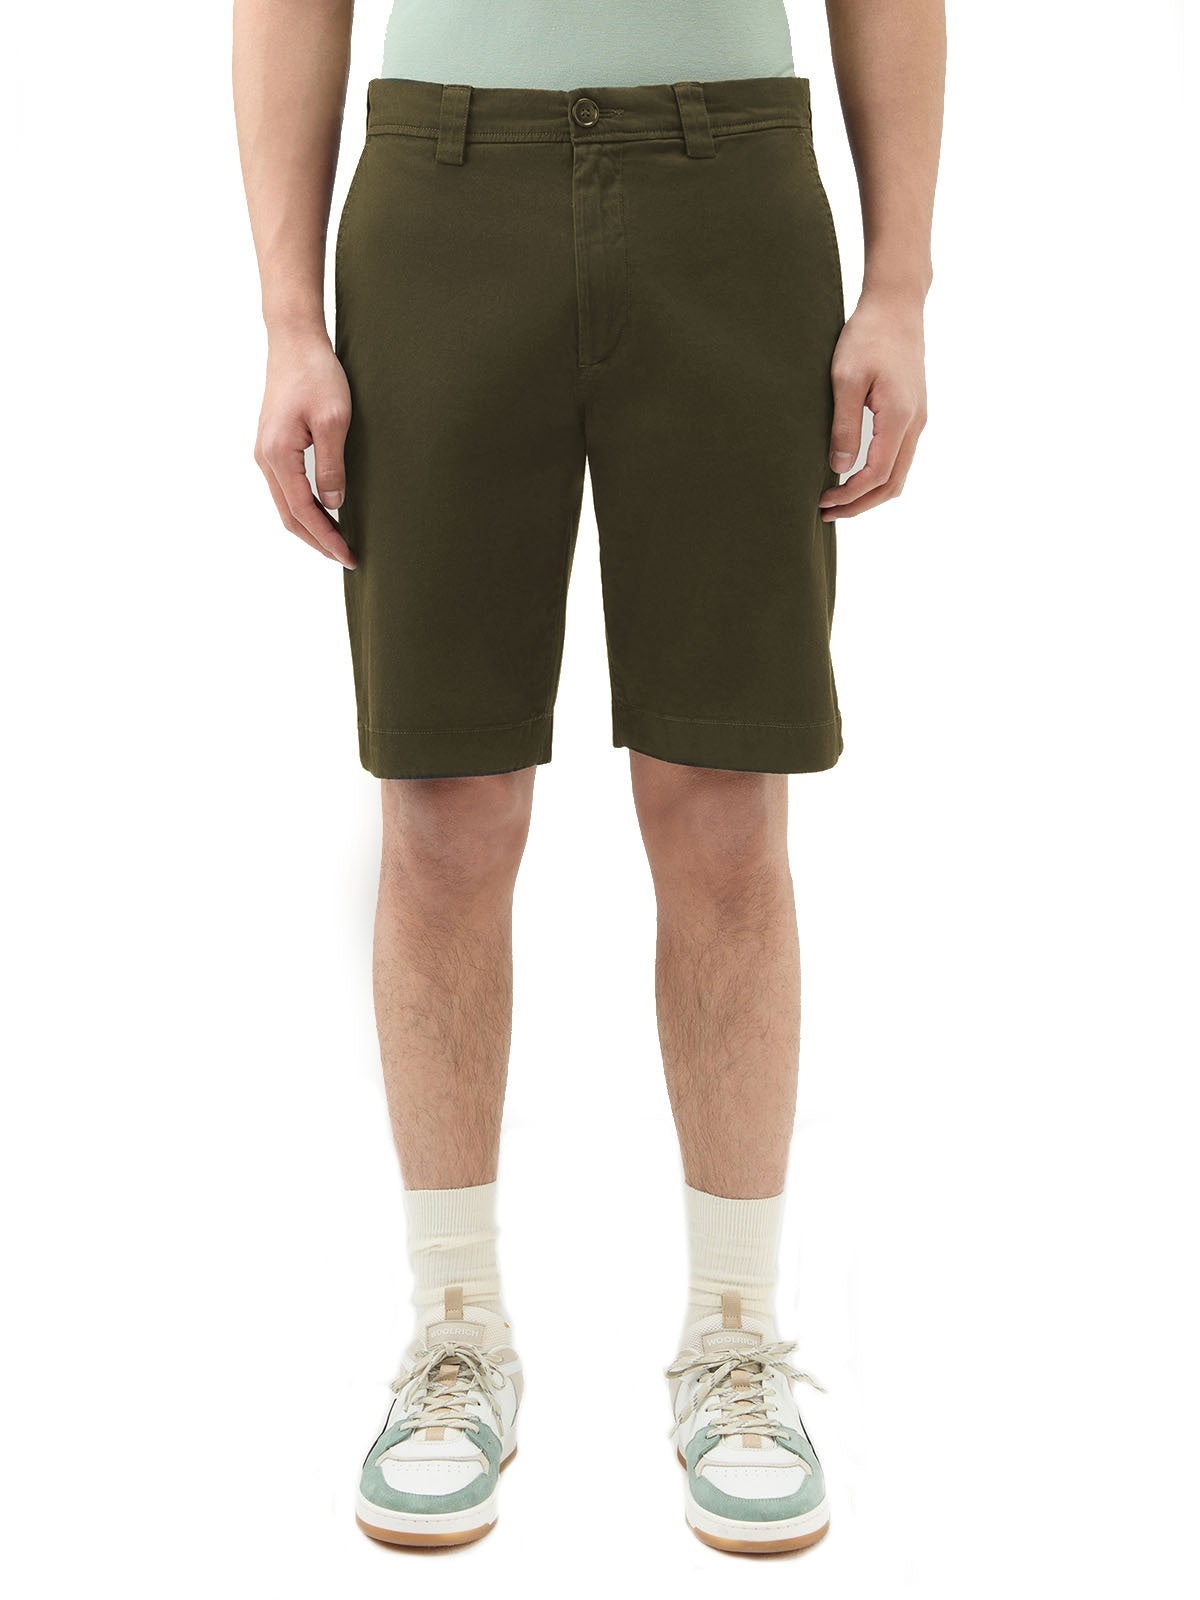 Bermuda Uomo Woolrich - Pantaloncini Chino In Cotone Elasticizzato - Verde